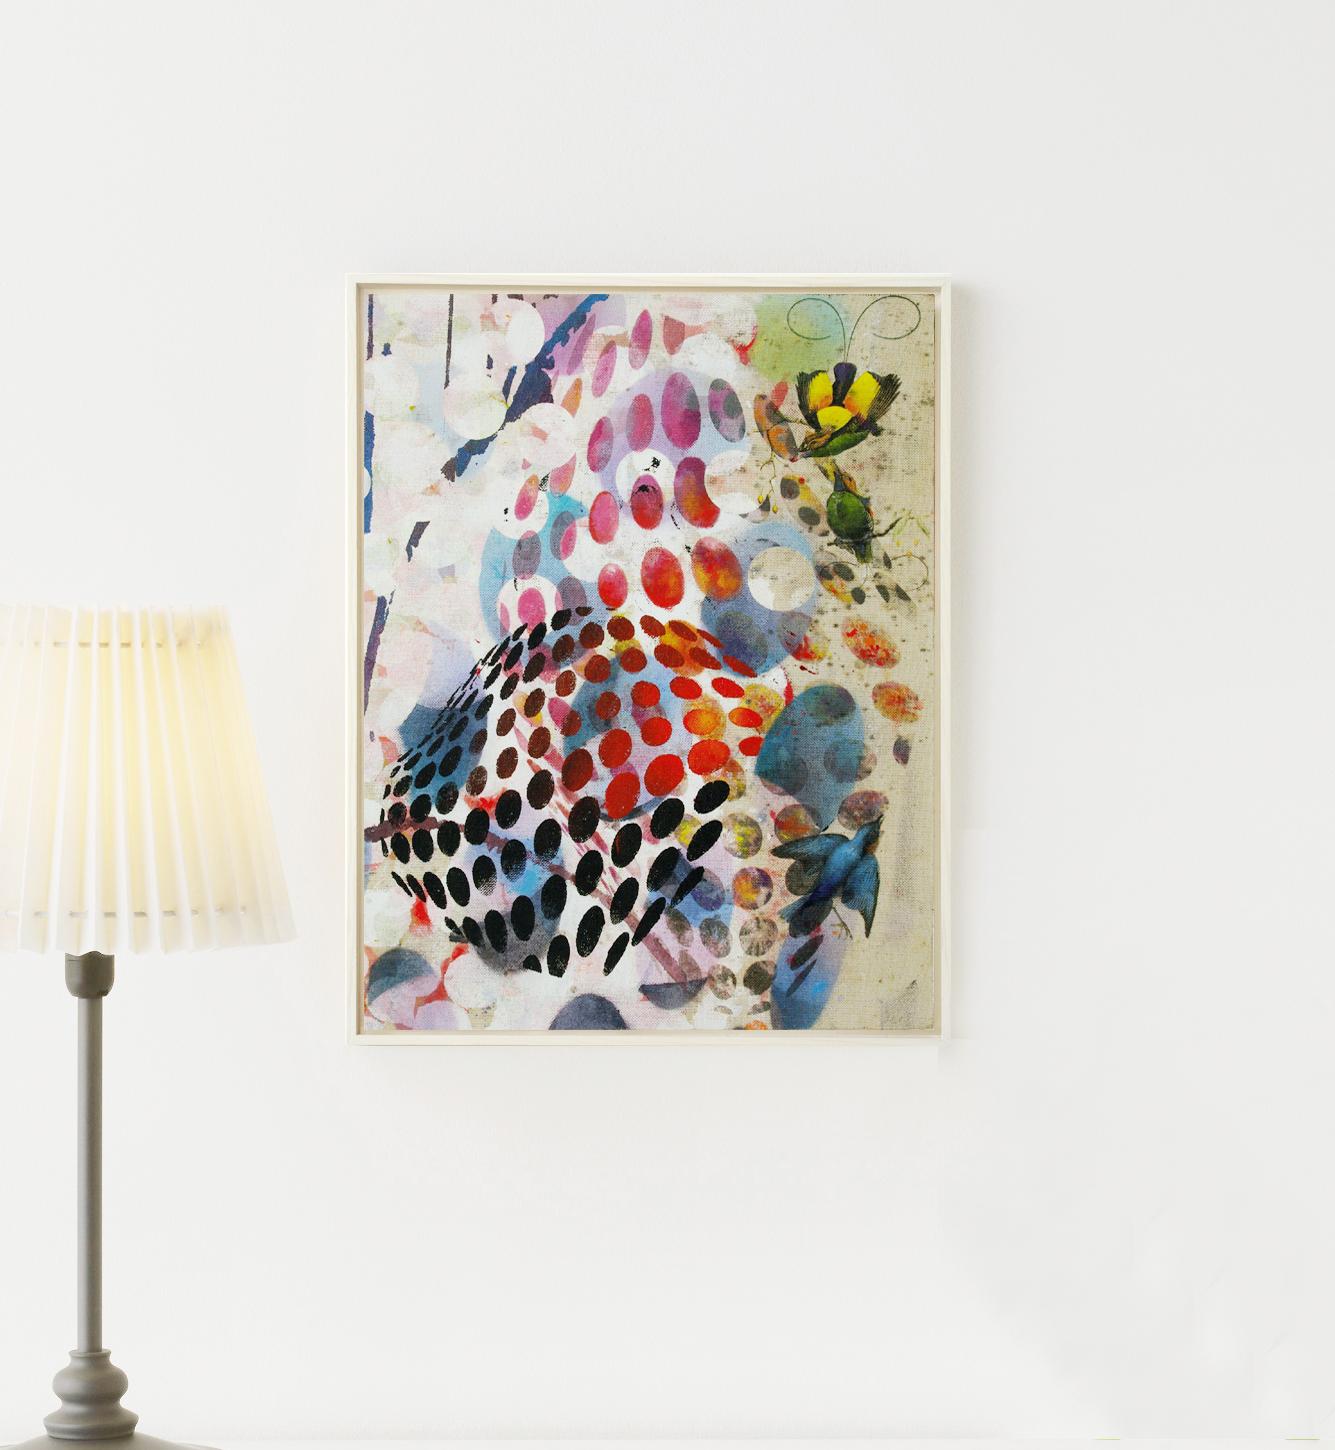 Oiseaux 026 - Contemporain, abstrait, expressionniste, moderne, art de la rue, surréaliste - Painting de Francisco Nicolás